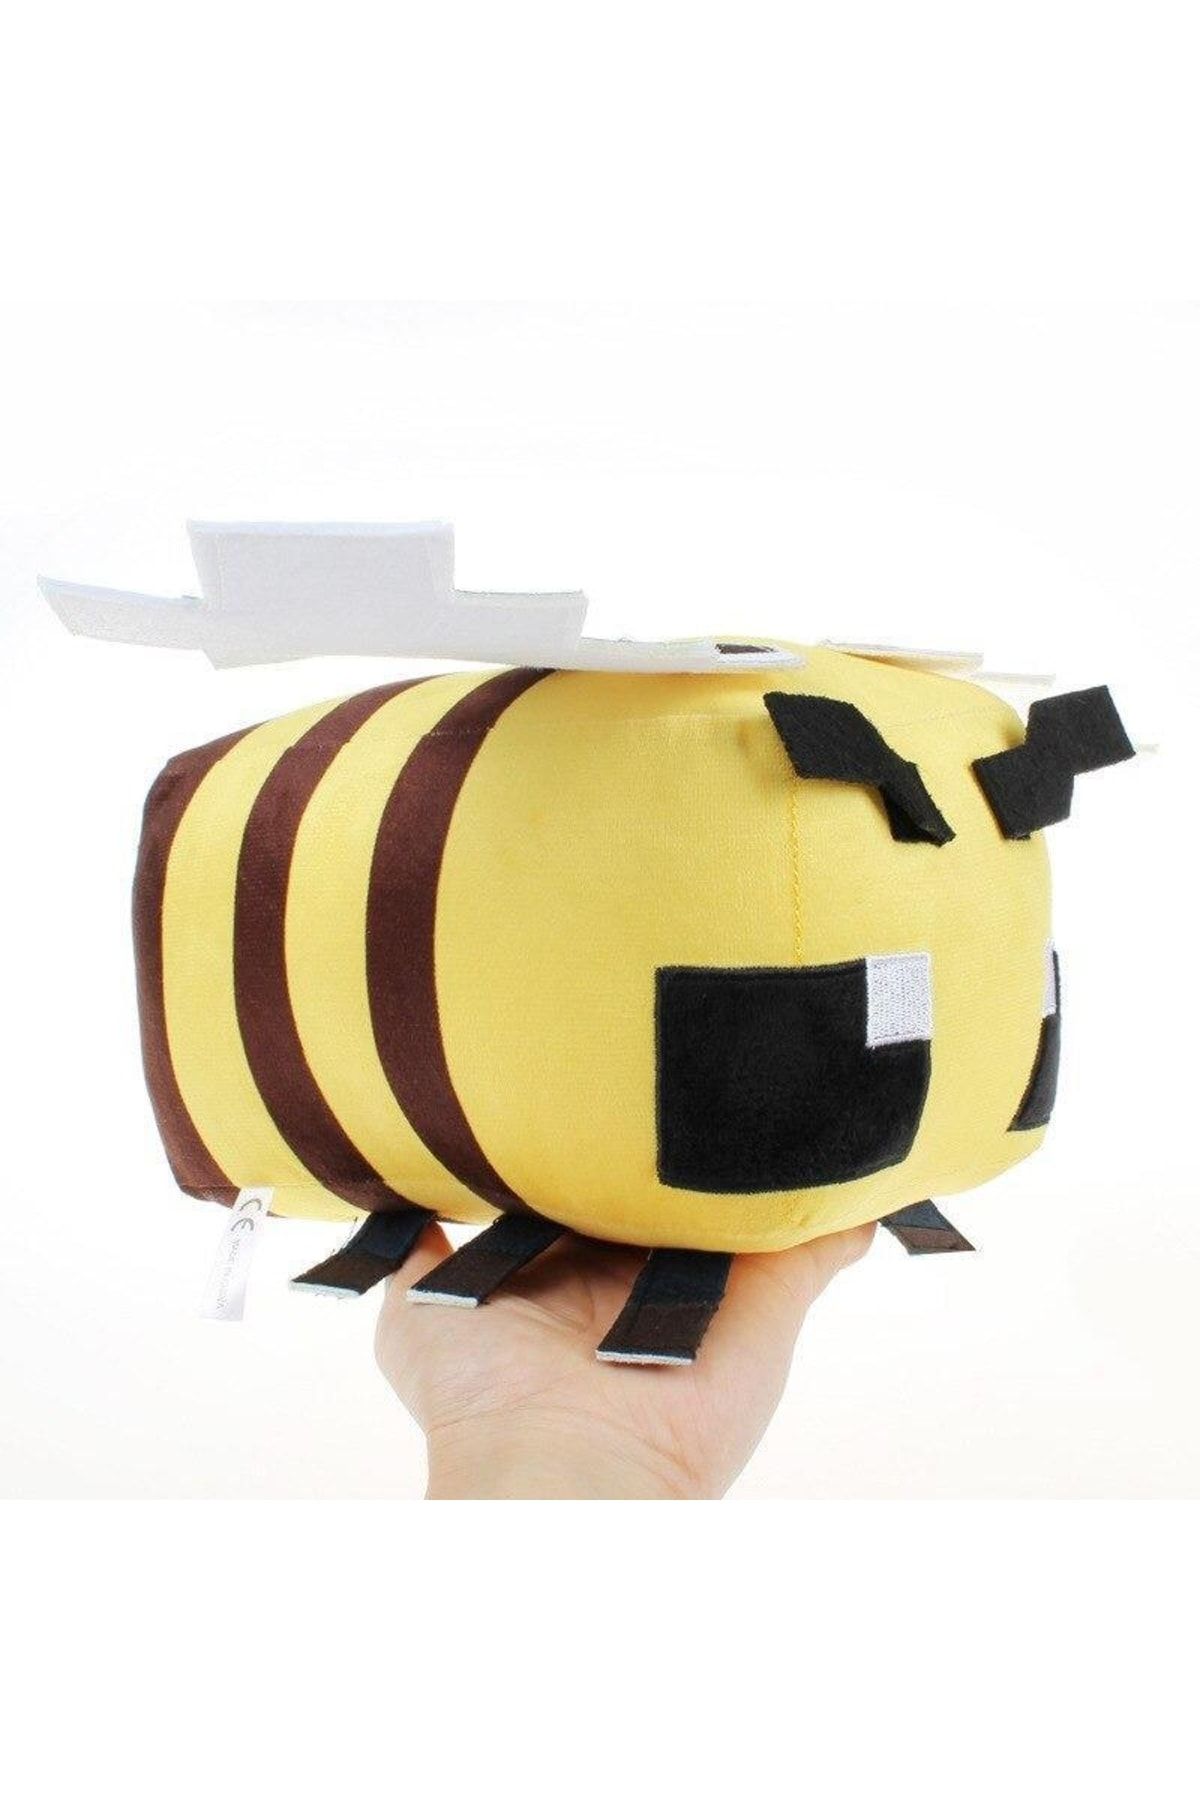 Schulzz Minecraft Bee Arı Peluş Oyuncak 20 Cm